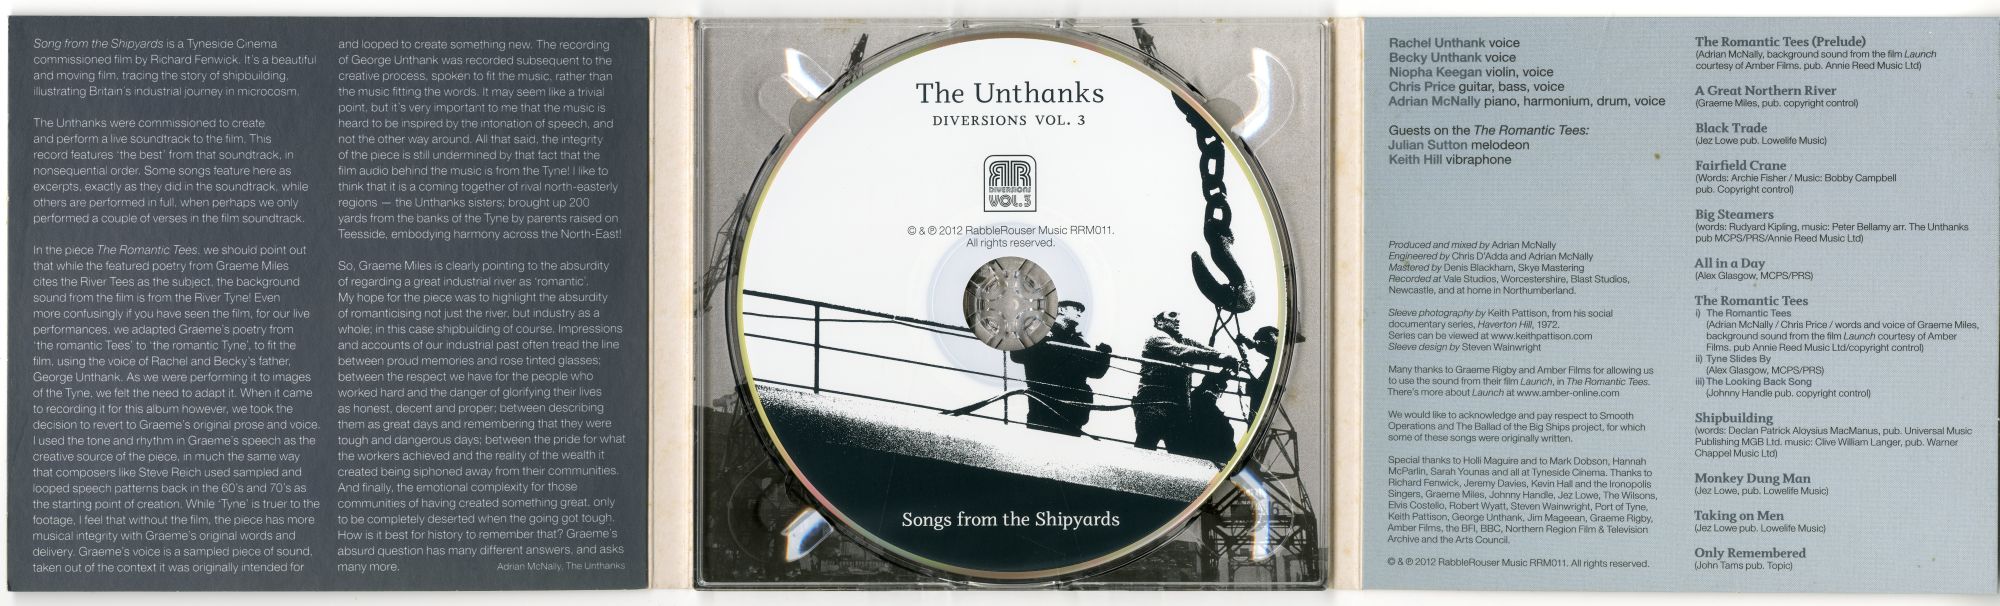 The Unthanks『Diversions Vol. 3』02